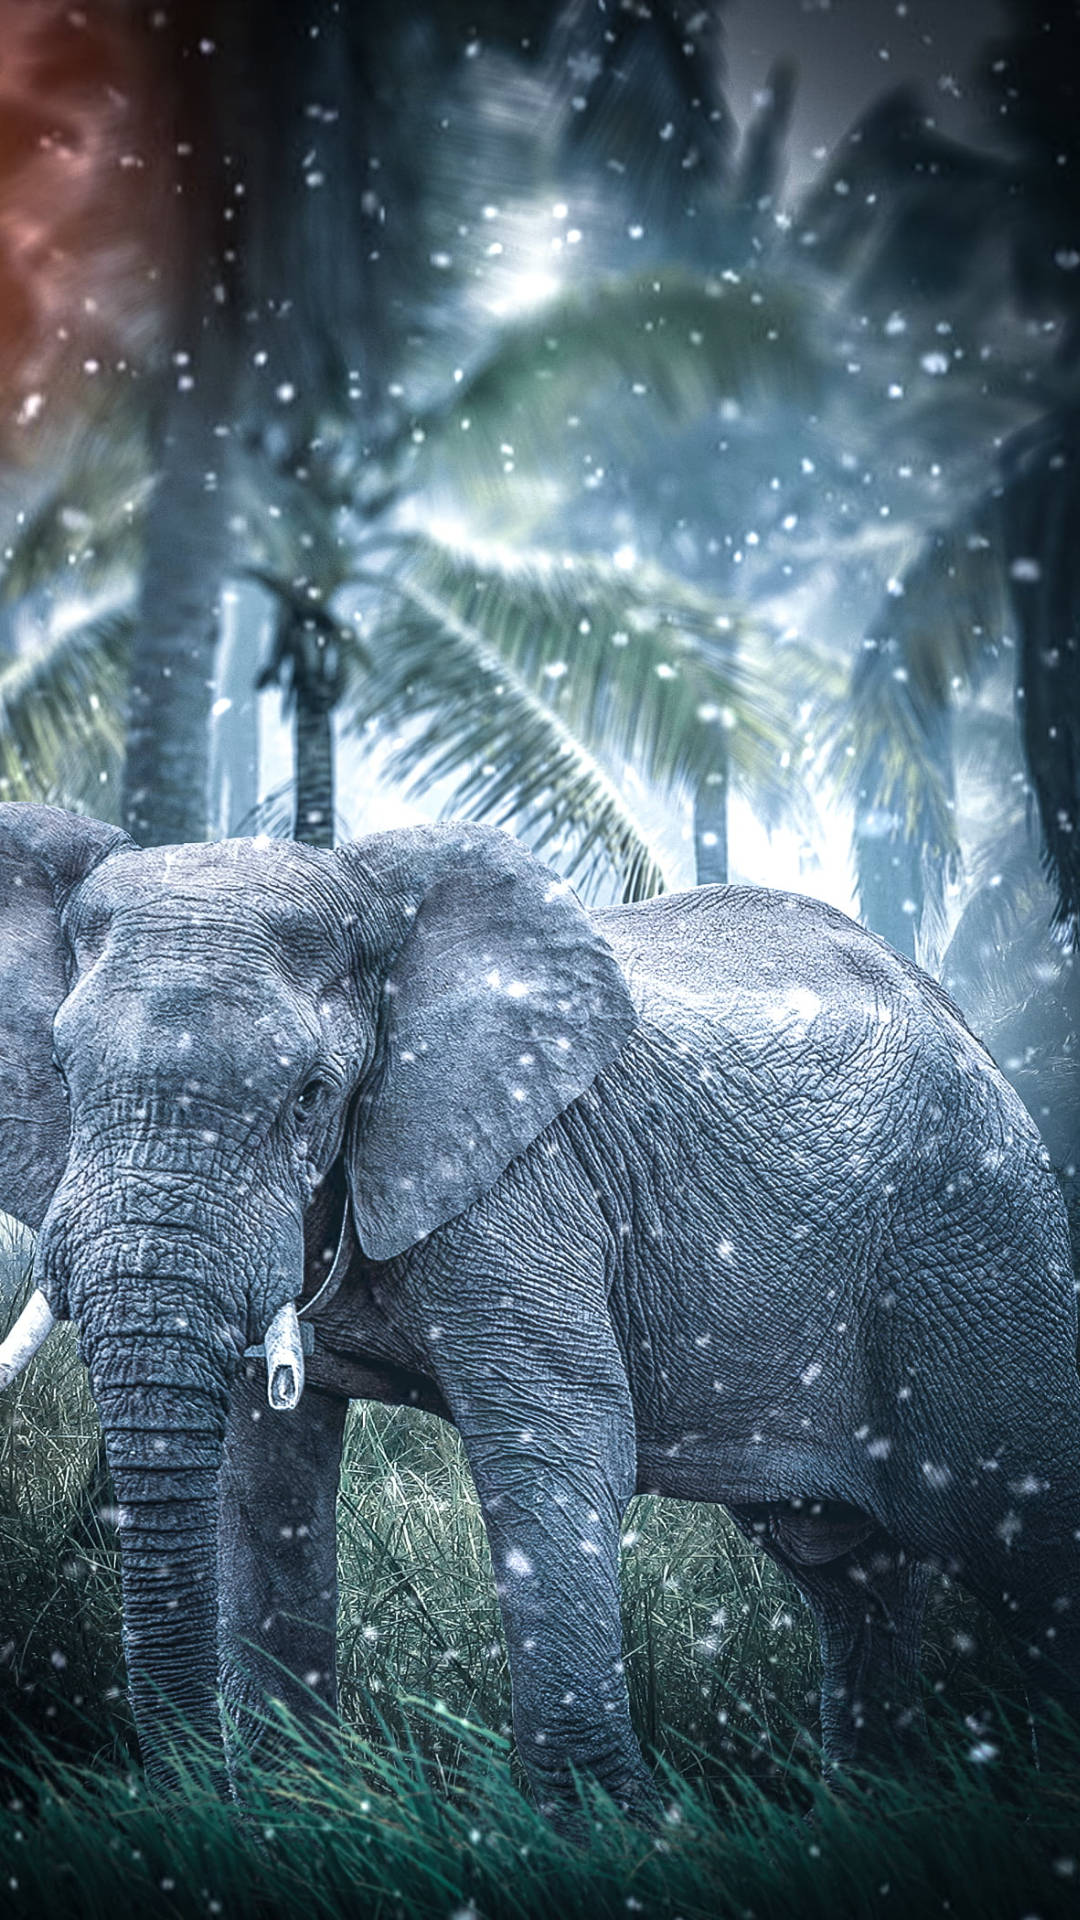  Elefant Hintergrundbild 1080x1920. Free Elephant iPhone Wallpaper Downloads, Elephant iPhone Wallpaper for FREE